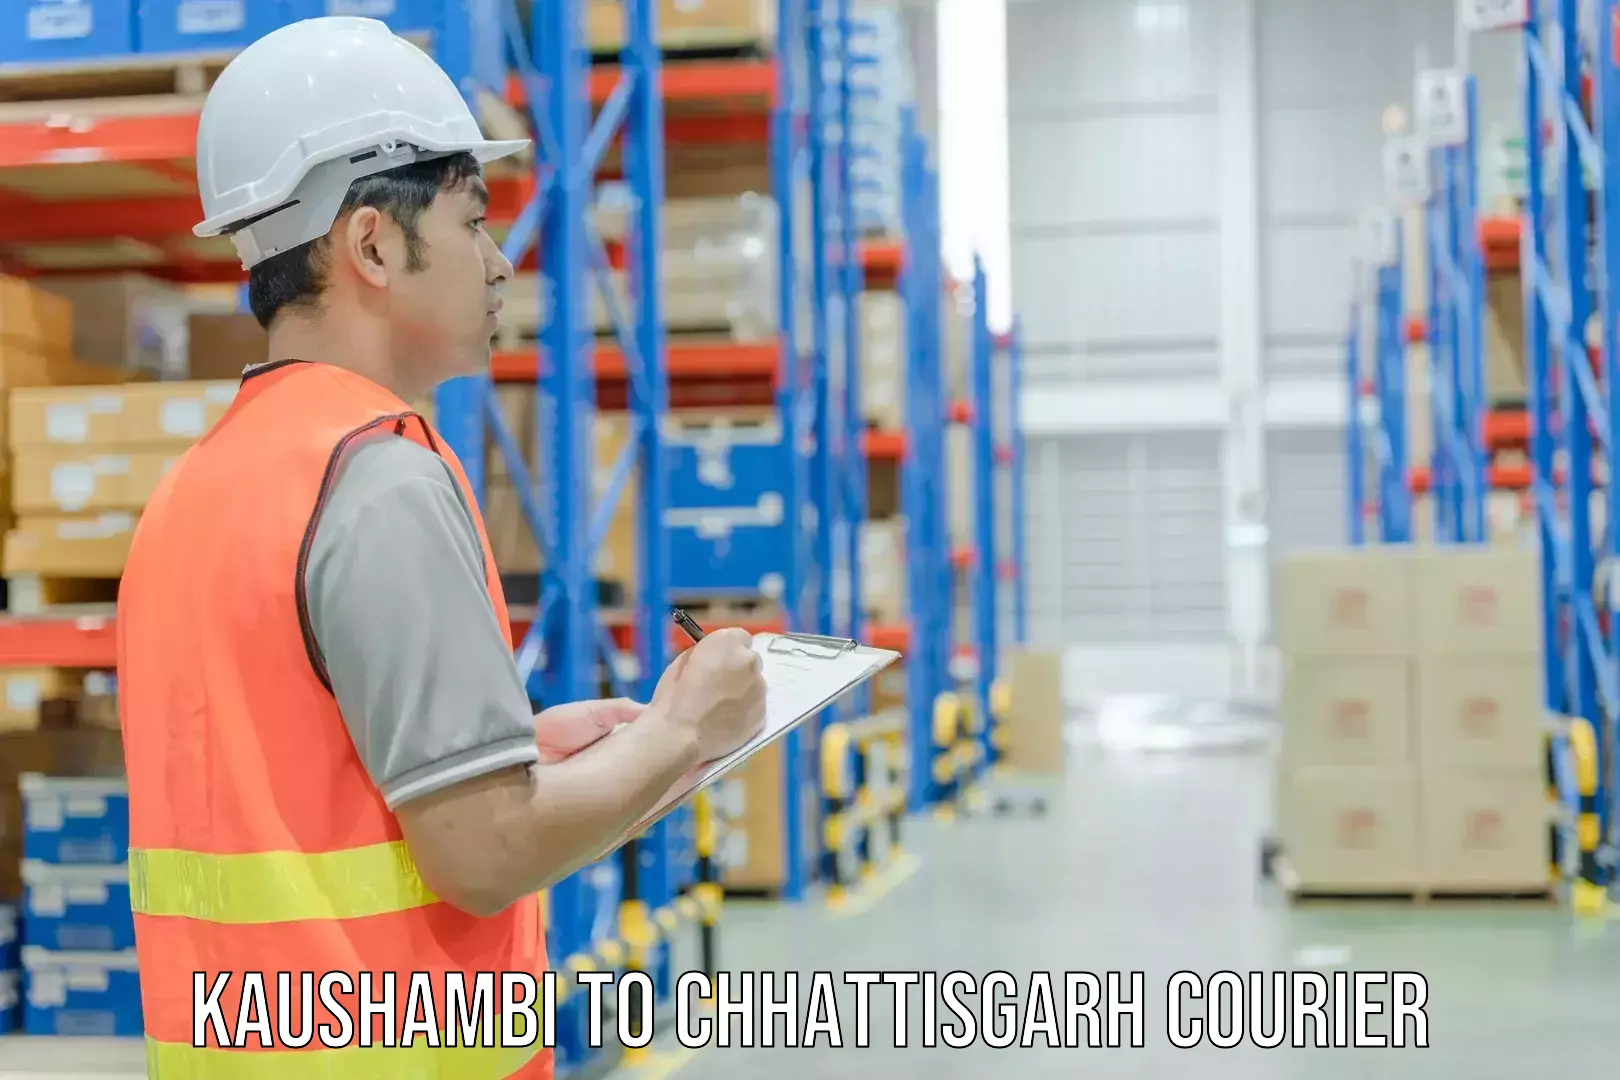 Lightweight courier Kaushambi to Raigarh